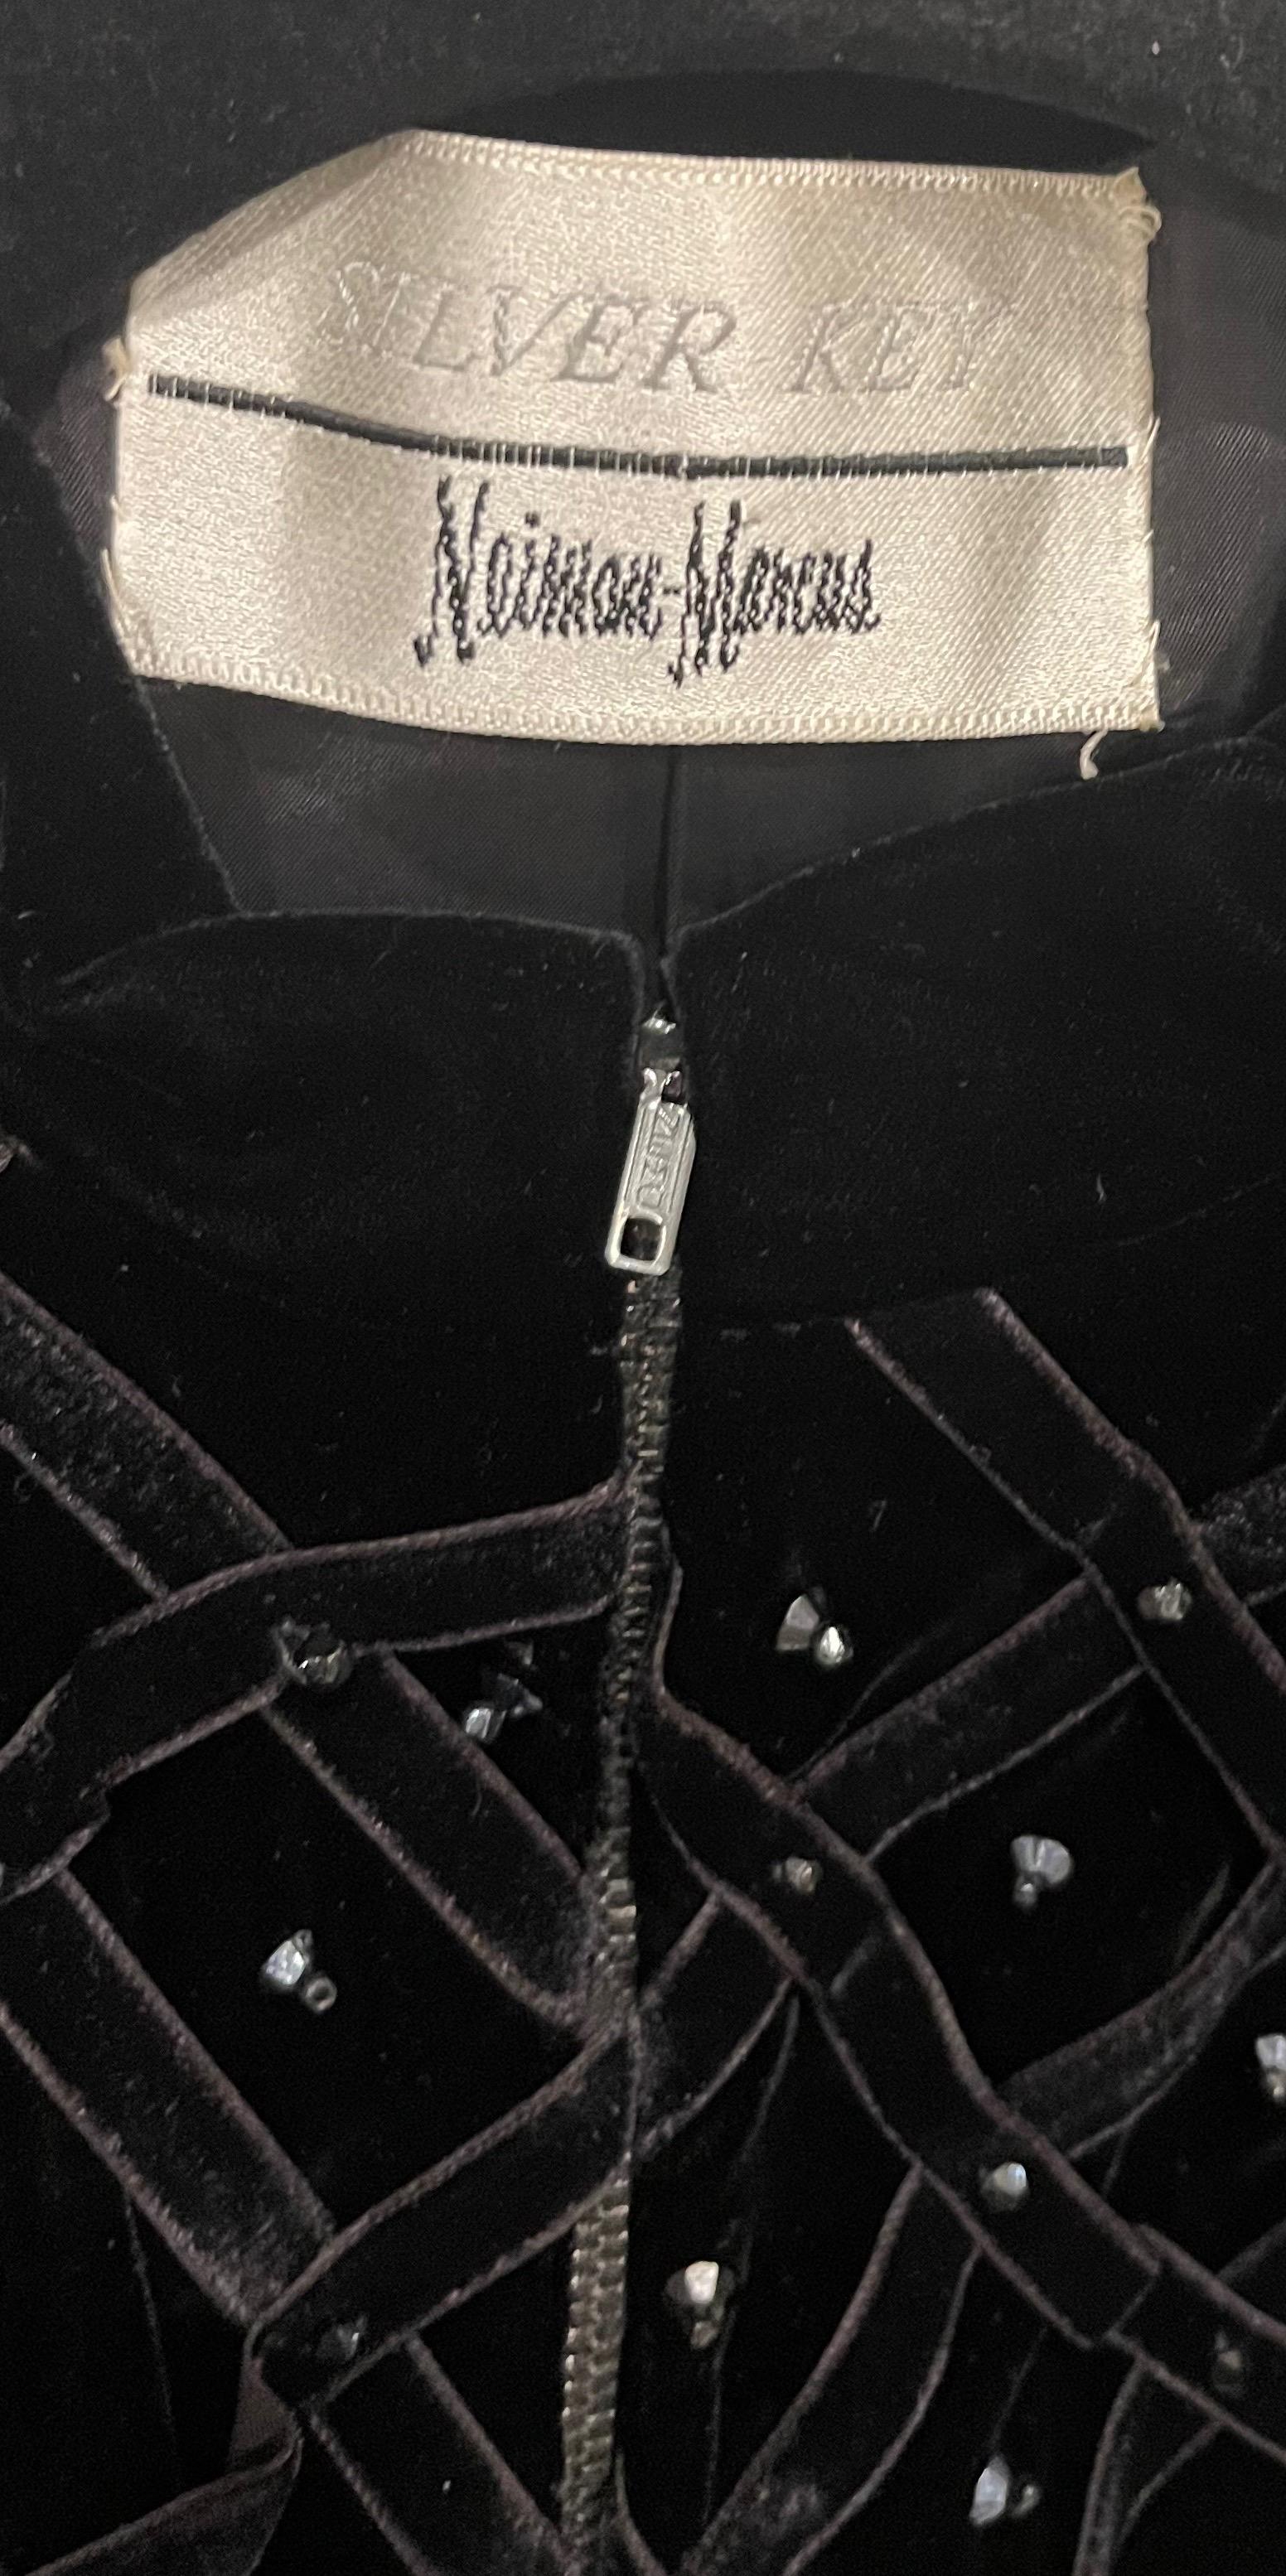 Chic veste en velours noir NEIMAN MARCUS 'Silver Key' des années 1960 ! Le ruban est composé de milliers de strass et de perles noirs cousus à la main. Fermeture à glissière en métal sur le devant. Parfait seul ou superposé.
Très bien fait et